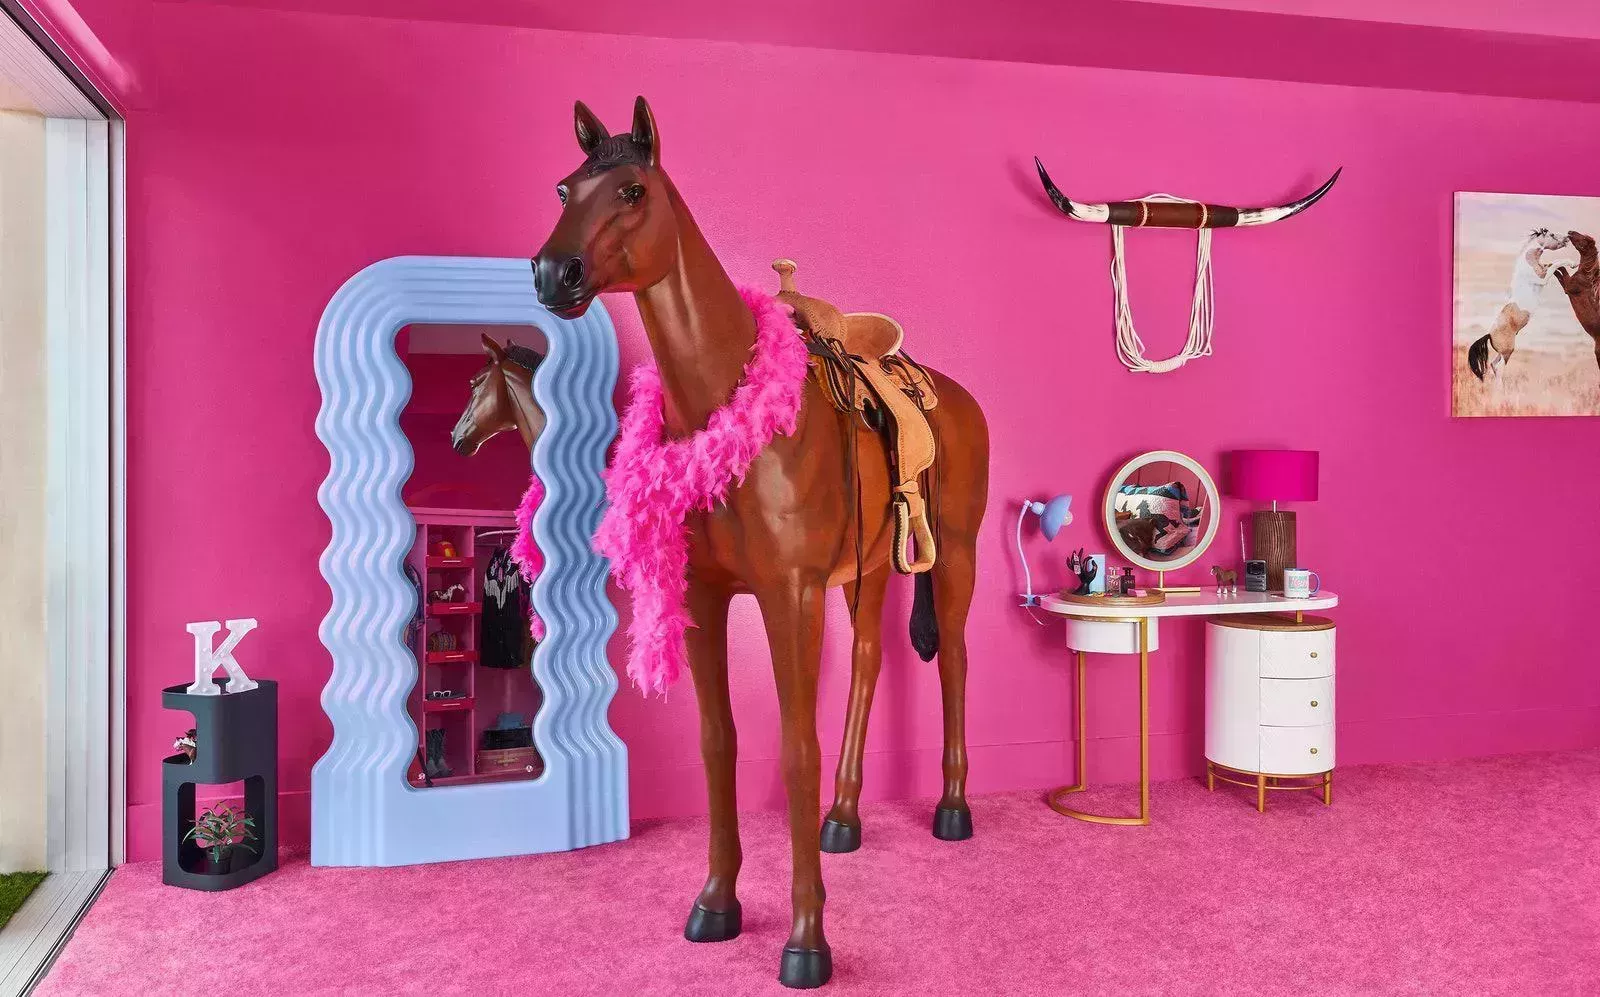 Puedes alojarte gratis en la casa de ensueño de Barbie en Malibú. Te explicamos cómo.